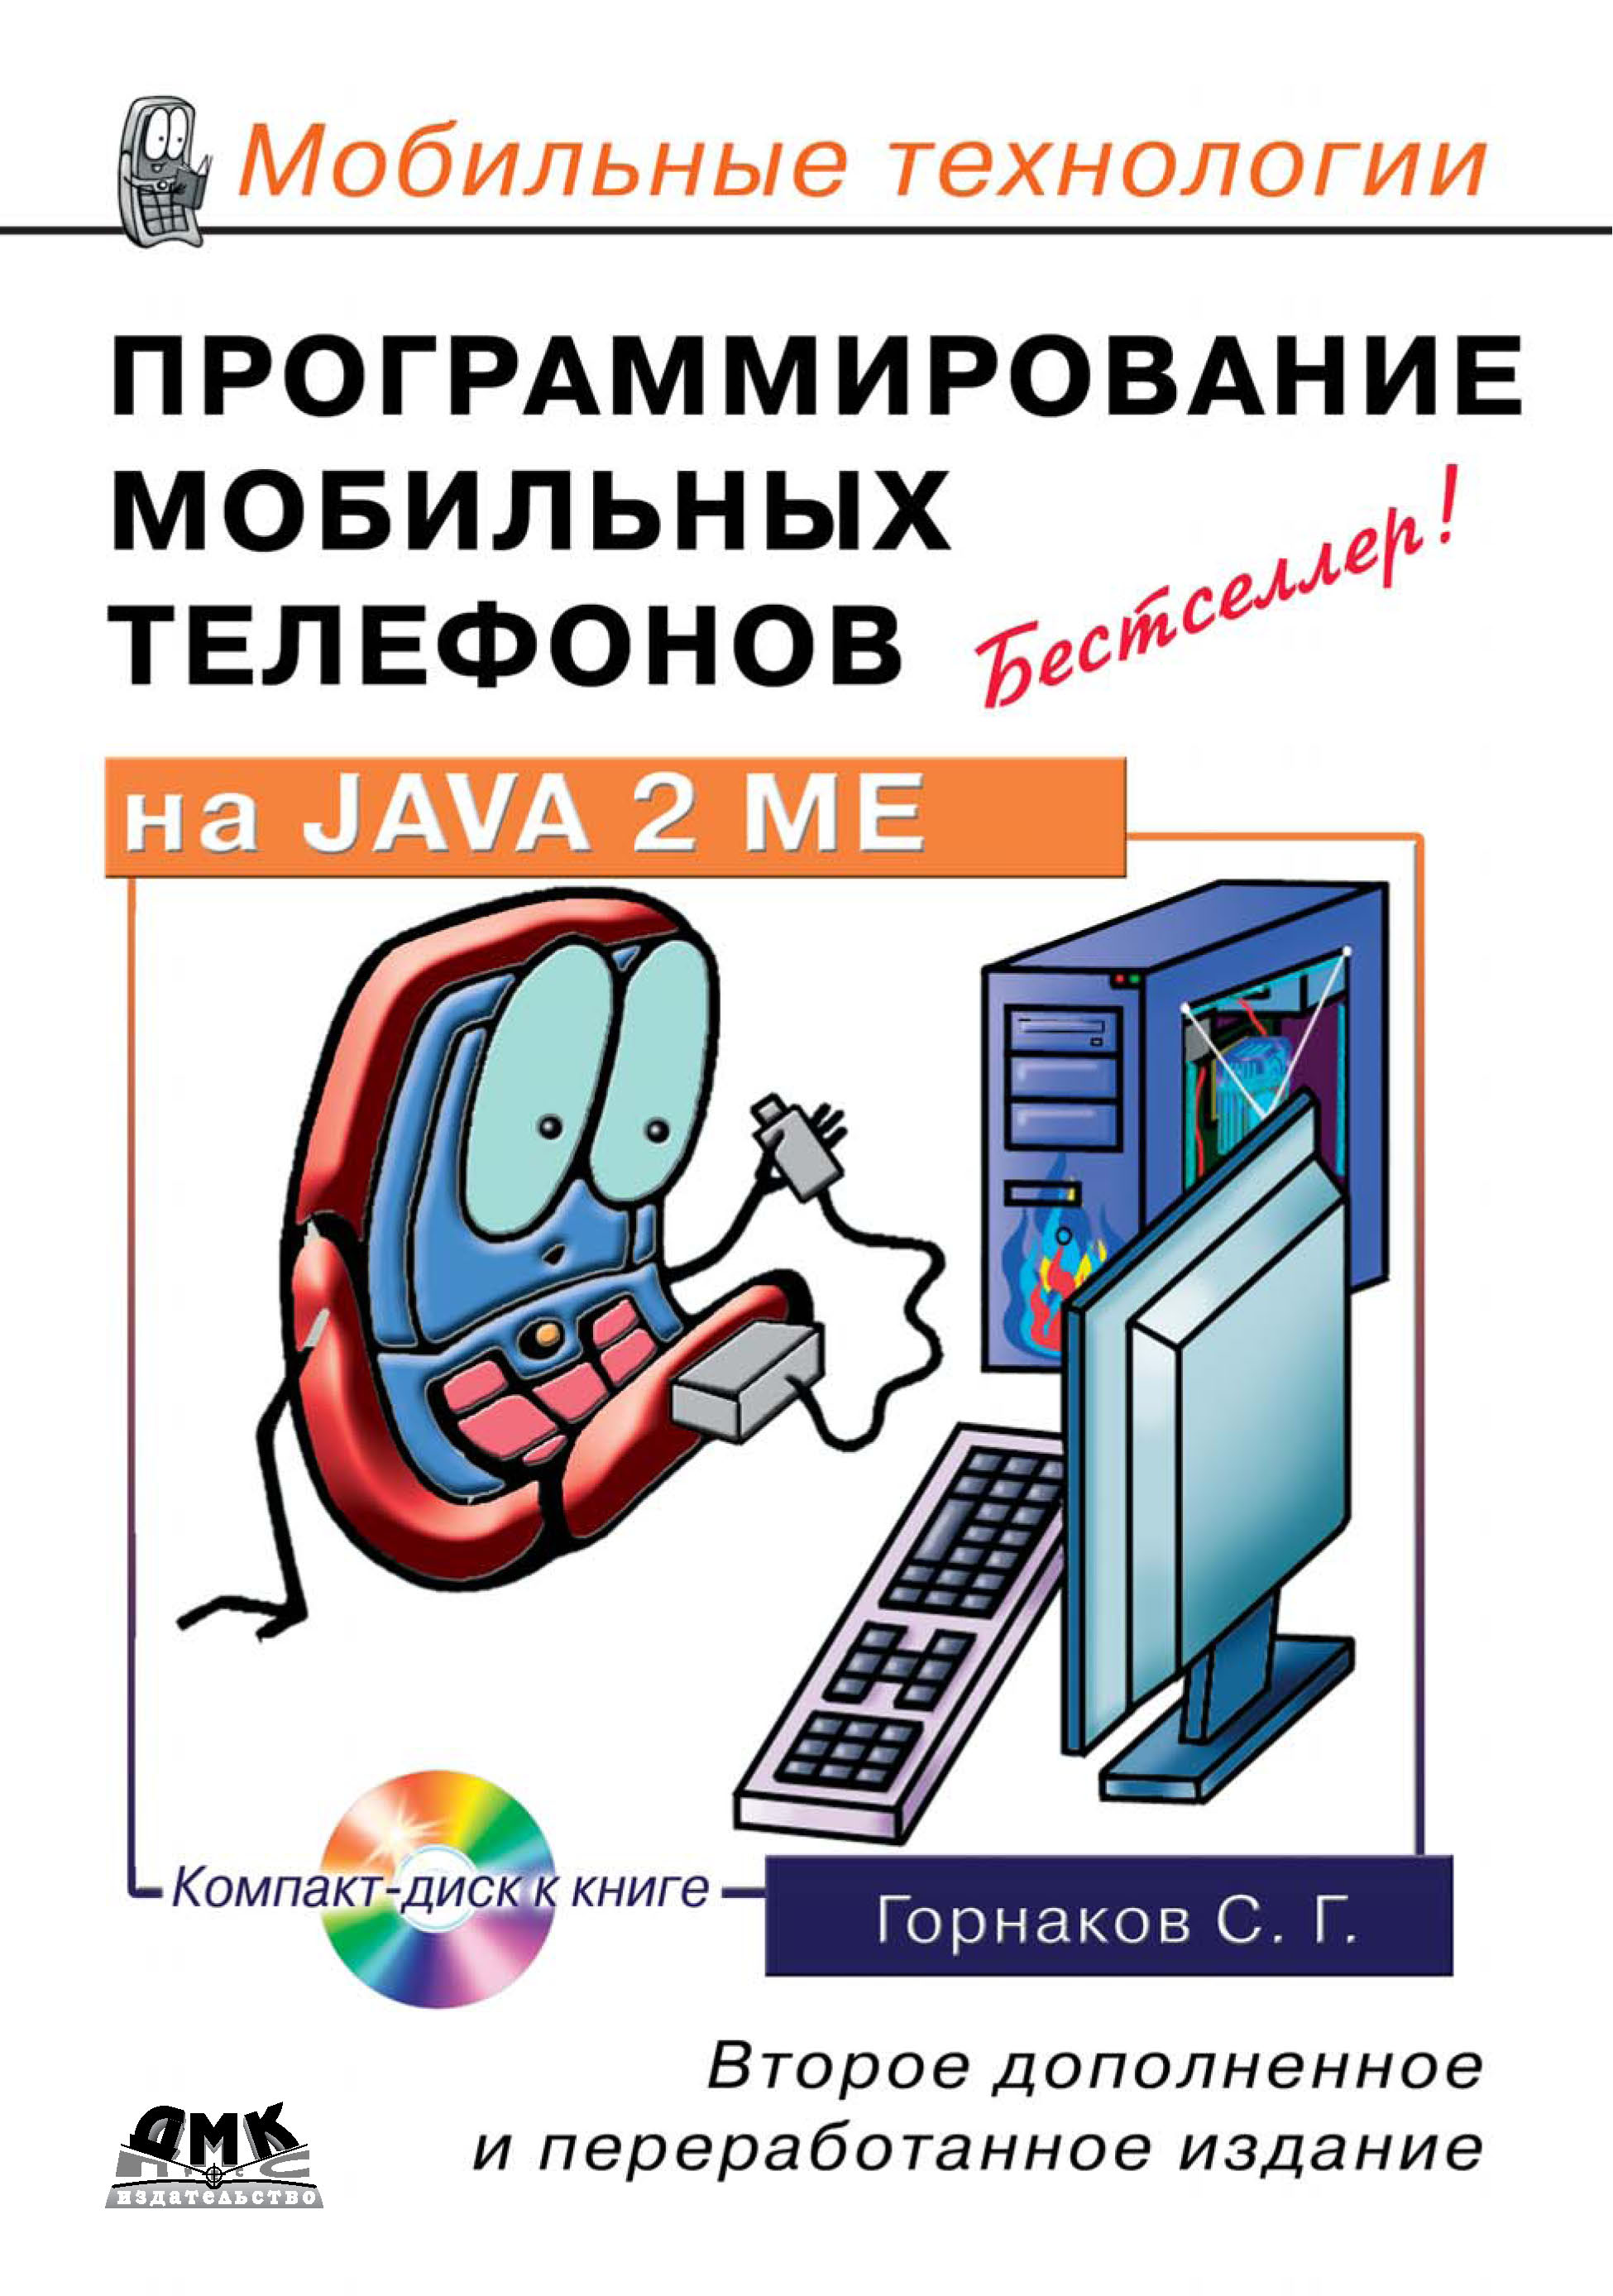 Книга Мобильные технологии Программирование мобильных телефонов на Java 2 Micro Edition созданная Станислав Горнаков может относится к жанру программирование. Стоимость электронной книги Программирование мобильных телефонов на Java 2 Micro Edition с идентификатором 6283857 составляет 279.00 руб.